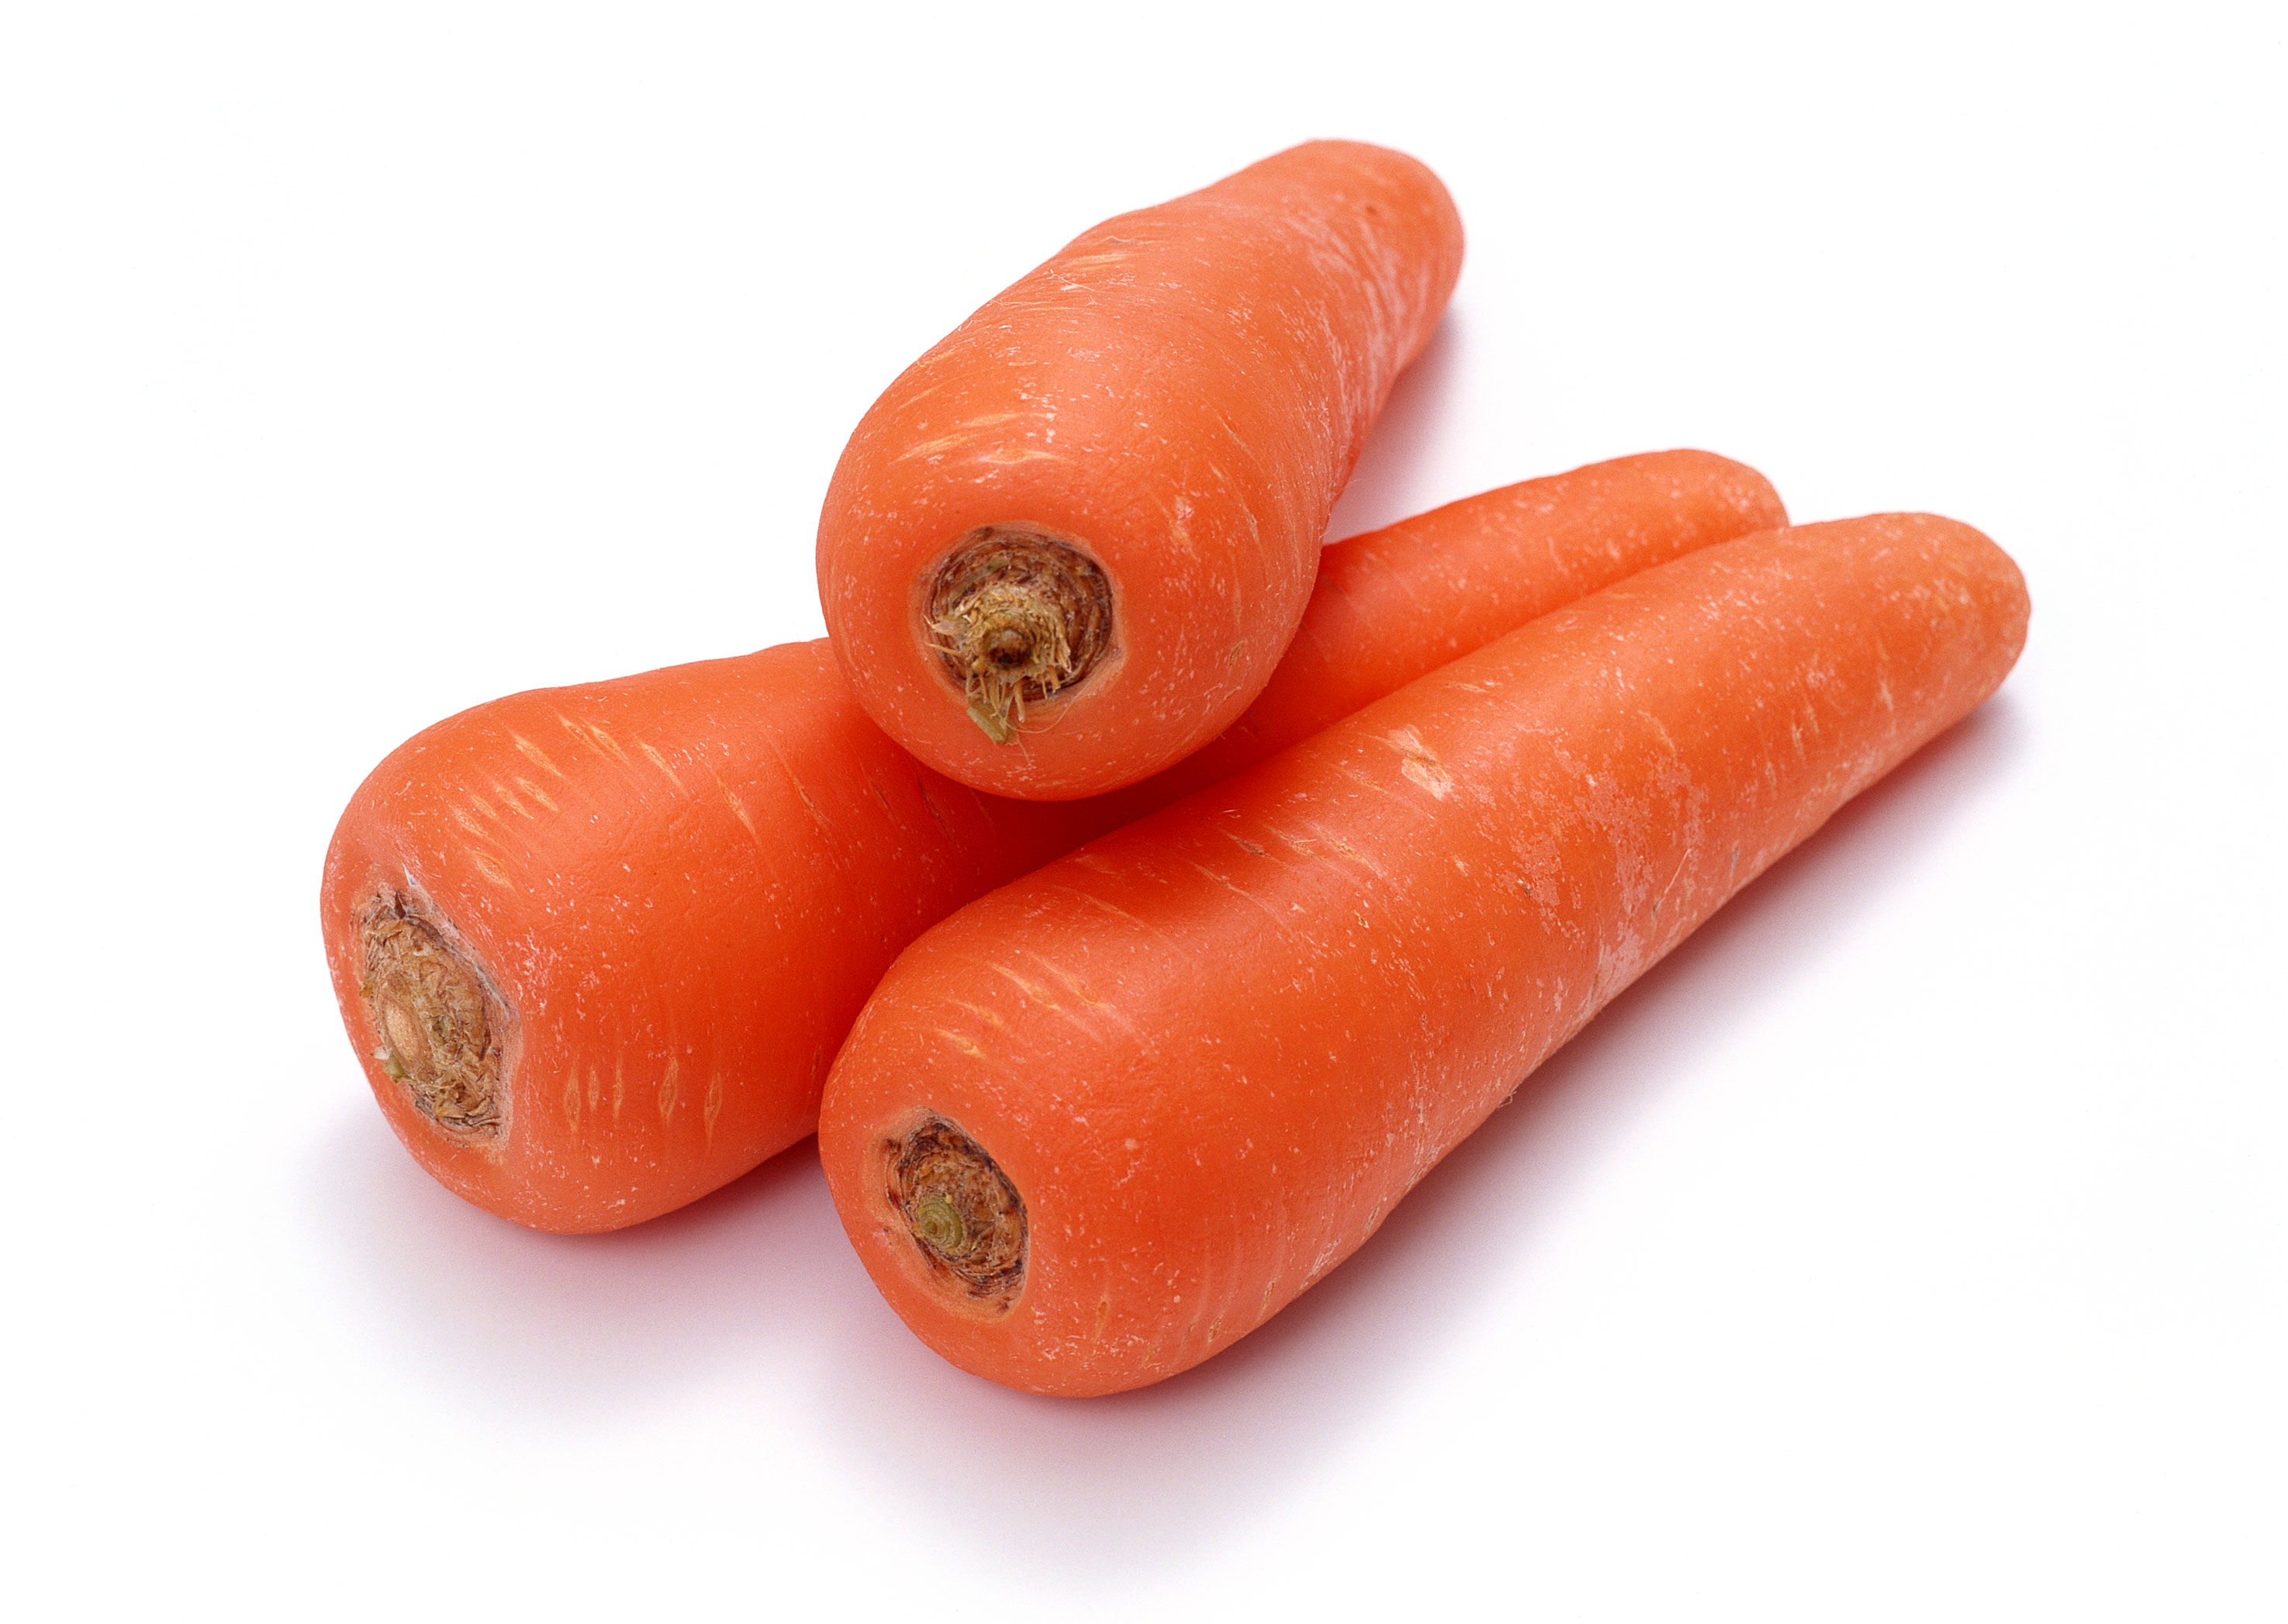 胡萝卜中含有的萜烯类化合物是其风味来源,研究表明,这种活性物质具有